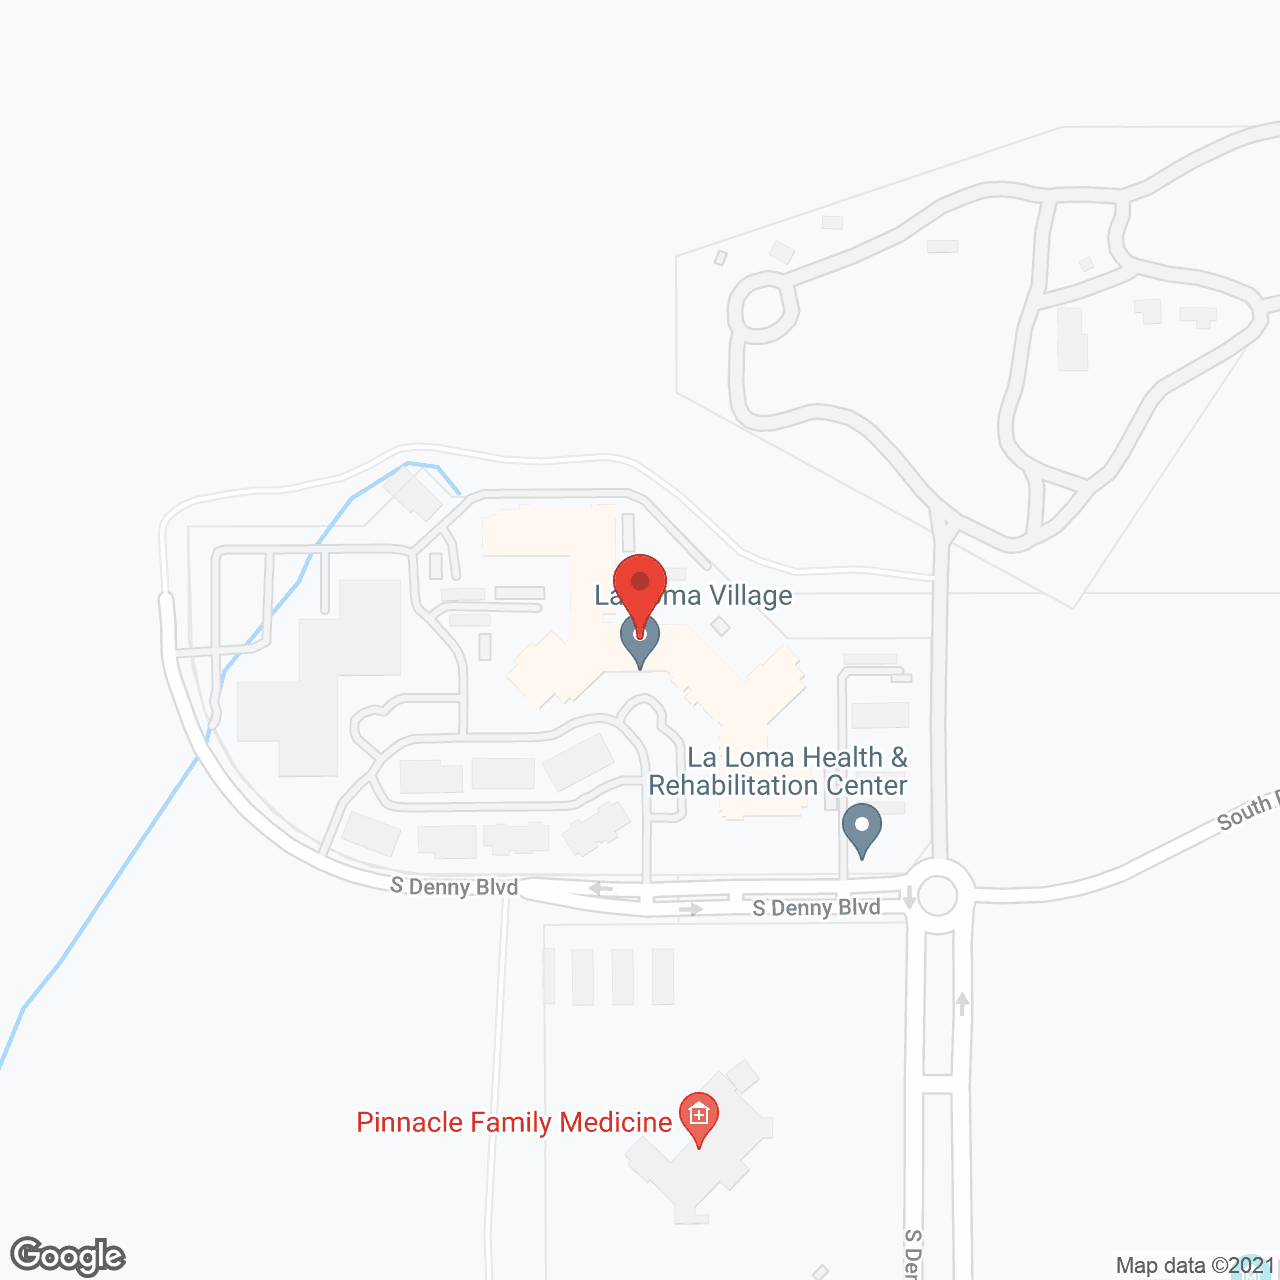 La Loma Village in google map